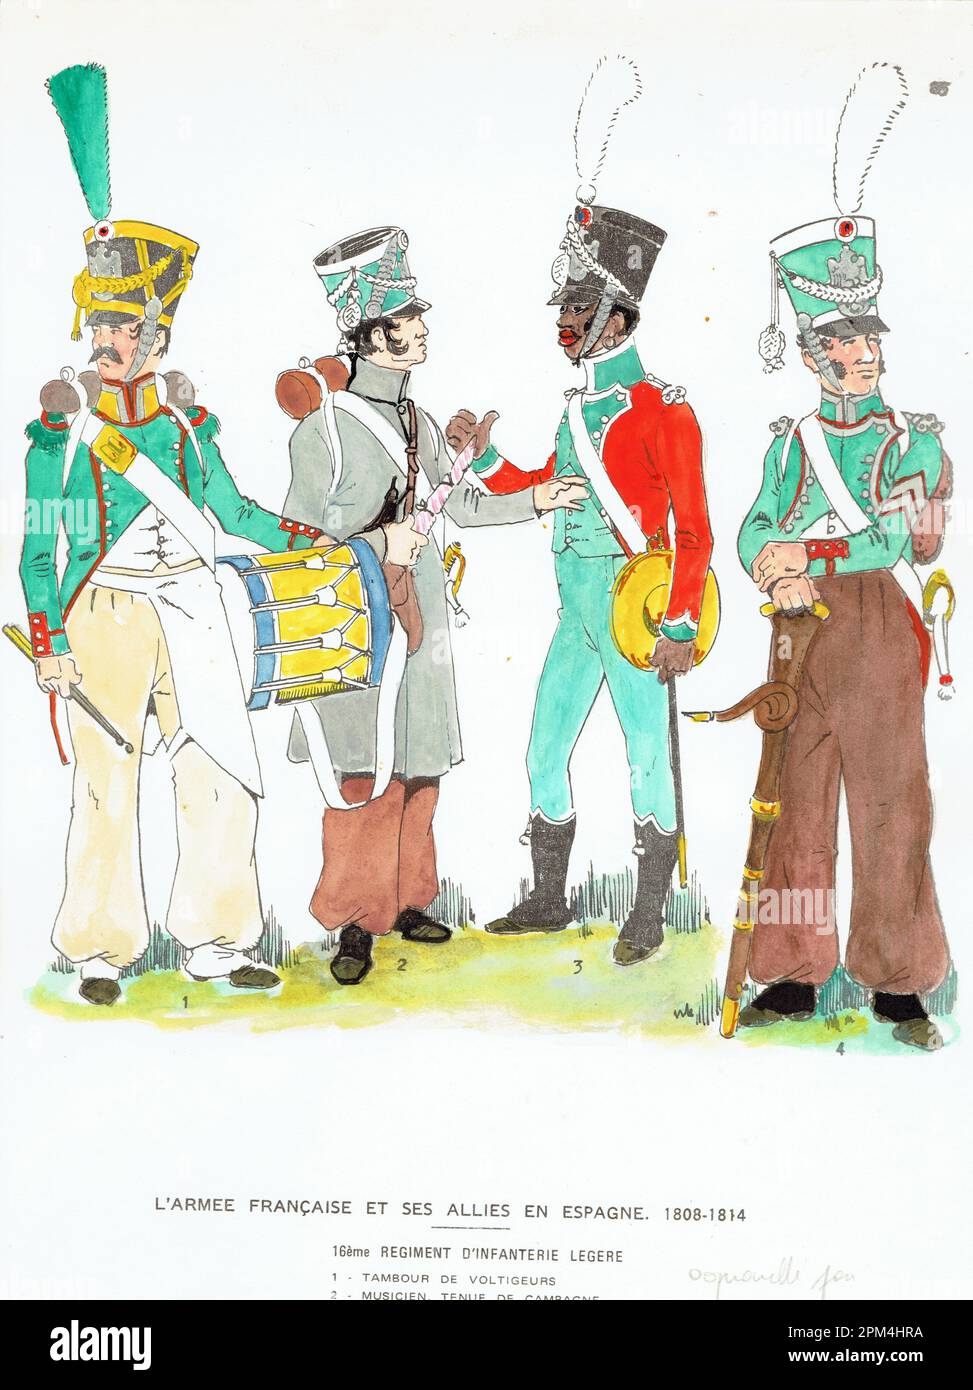 musiciens du 16e régiment d'infanterie légère française durant la campagne d'Espagne 1808 - 1813 Stock Photo